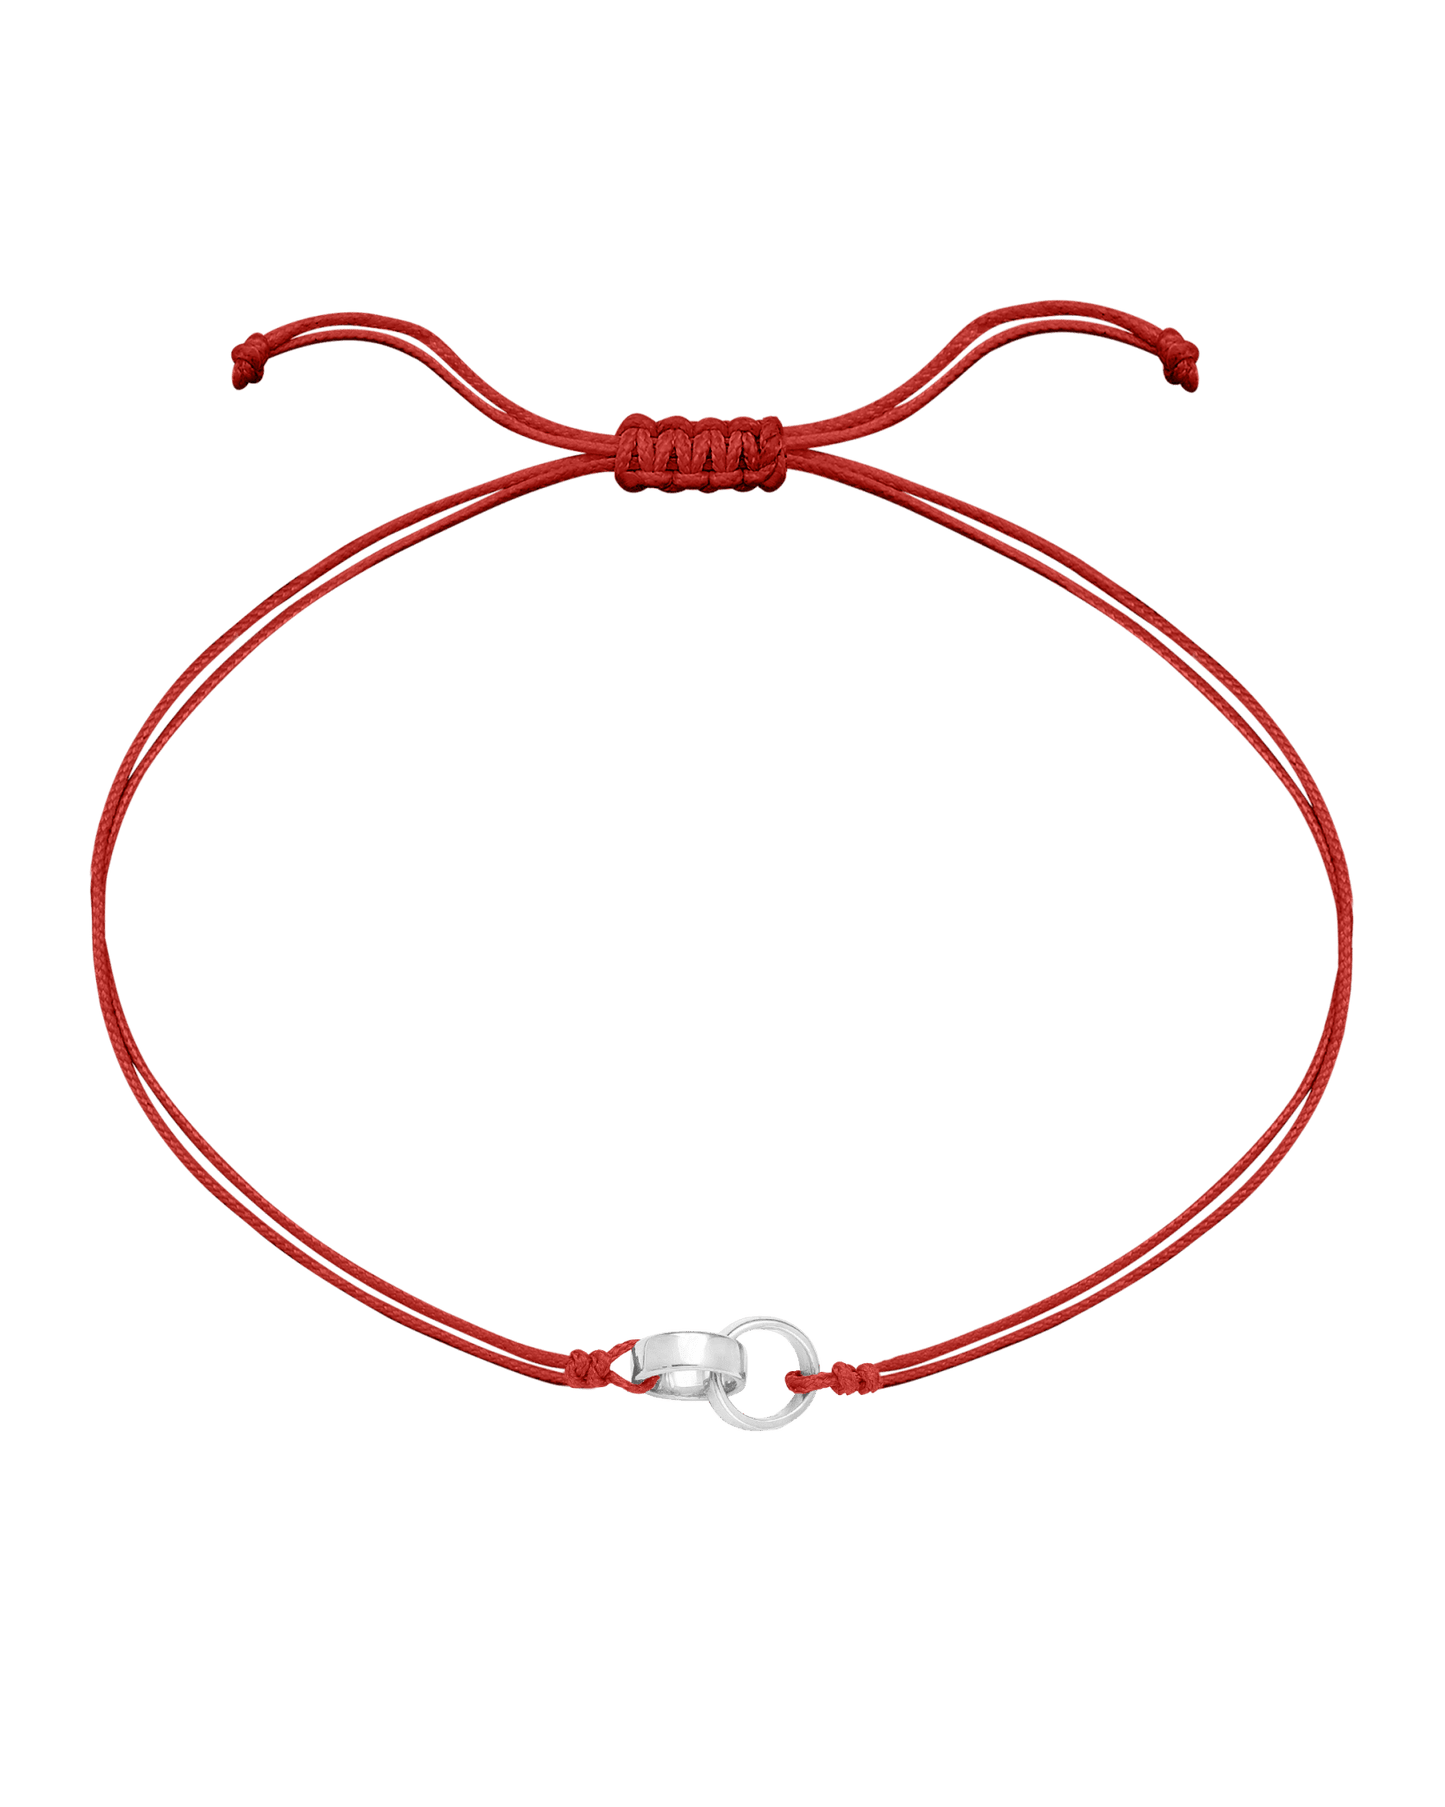 Engravable Links of Love - 925 Sterling Silver Bracelets magal-dev 2 Red 